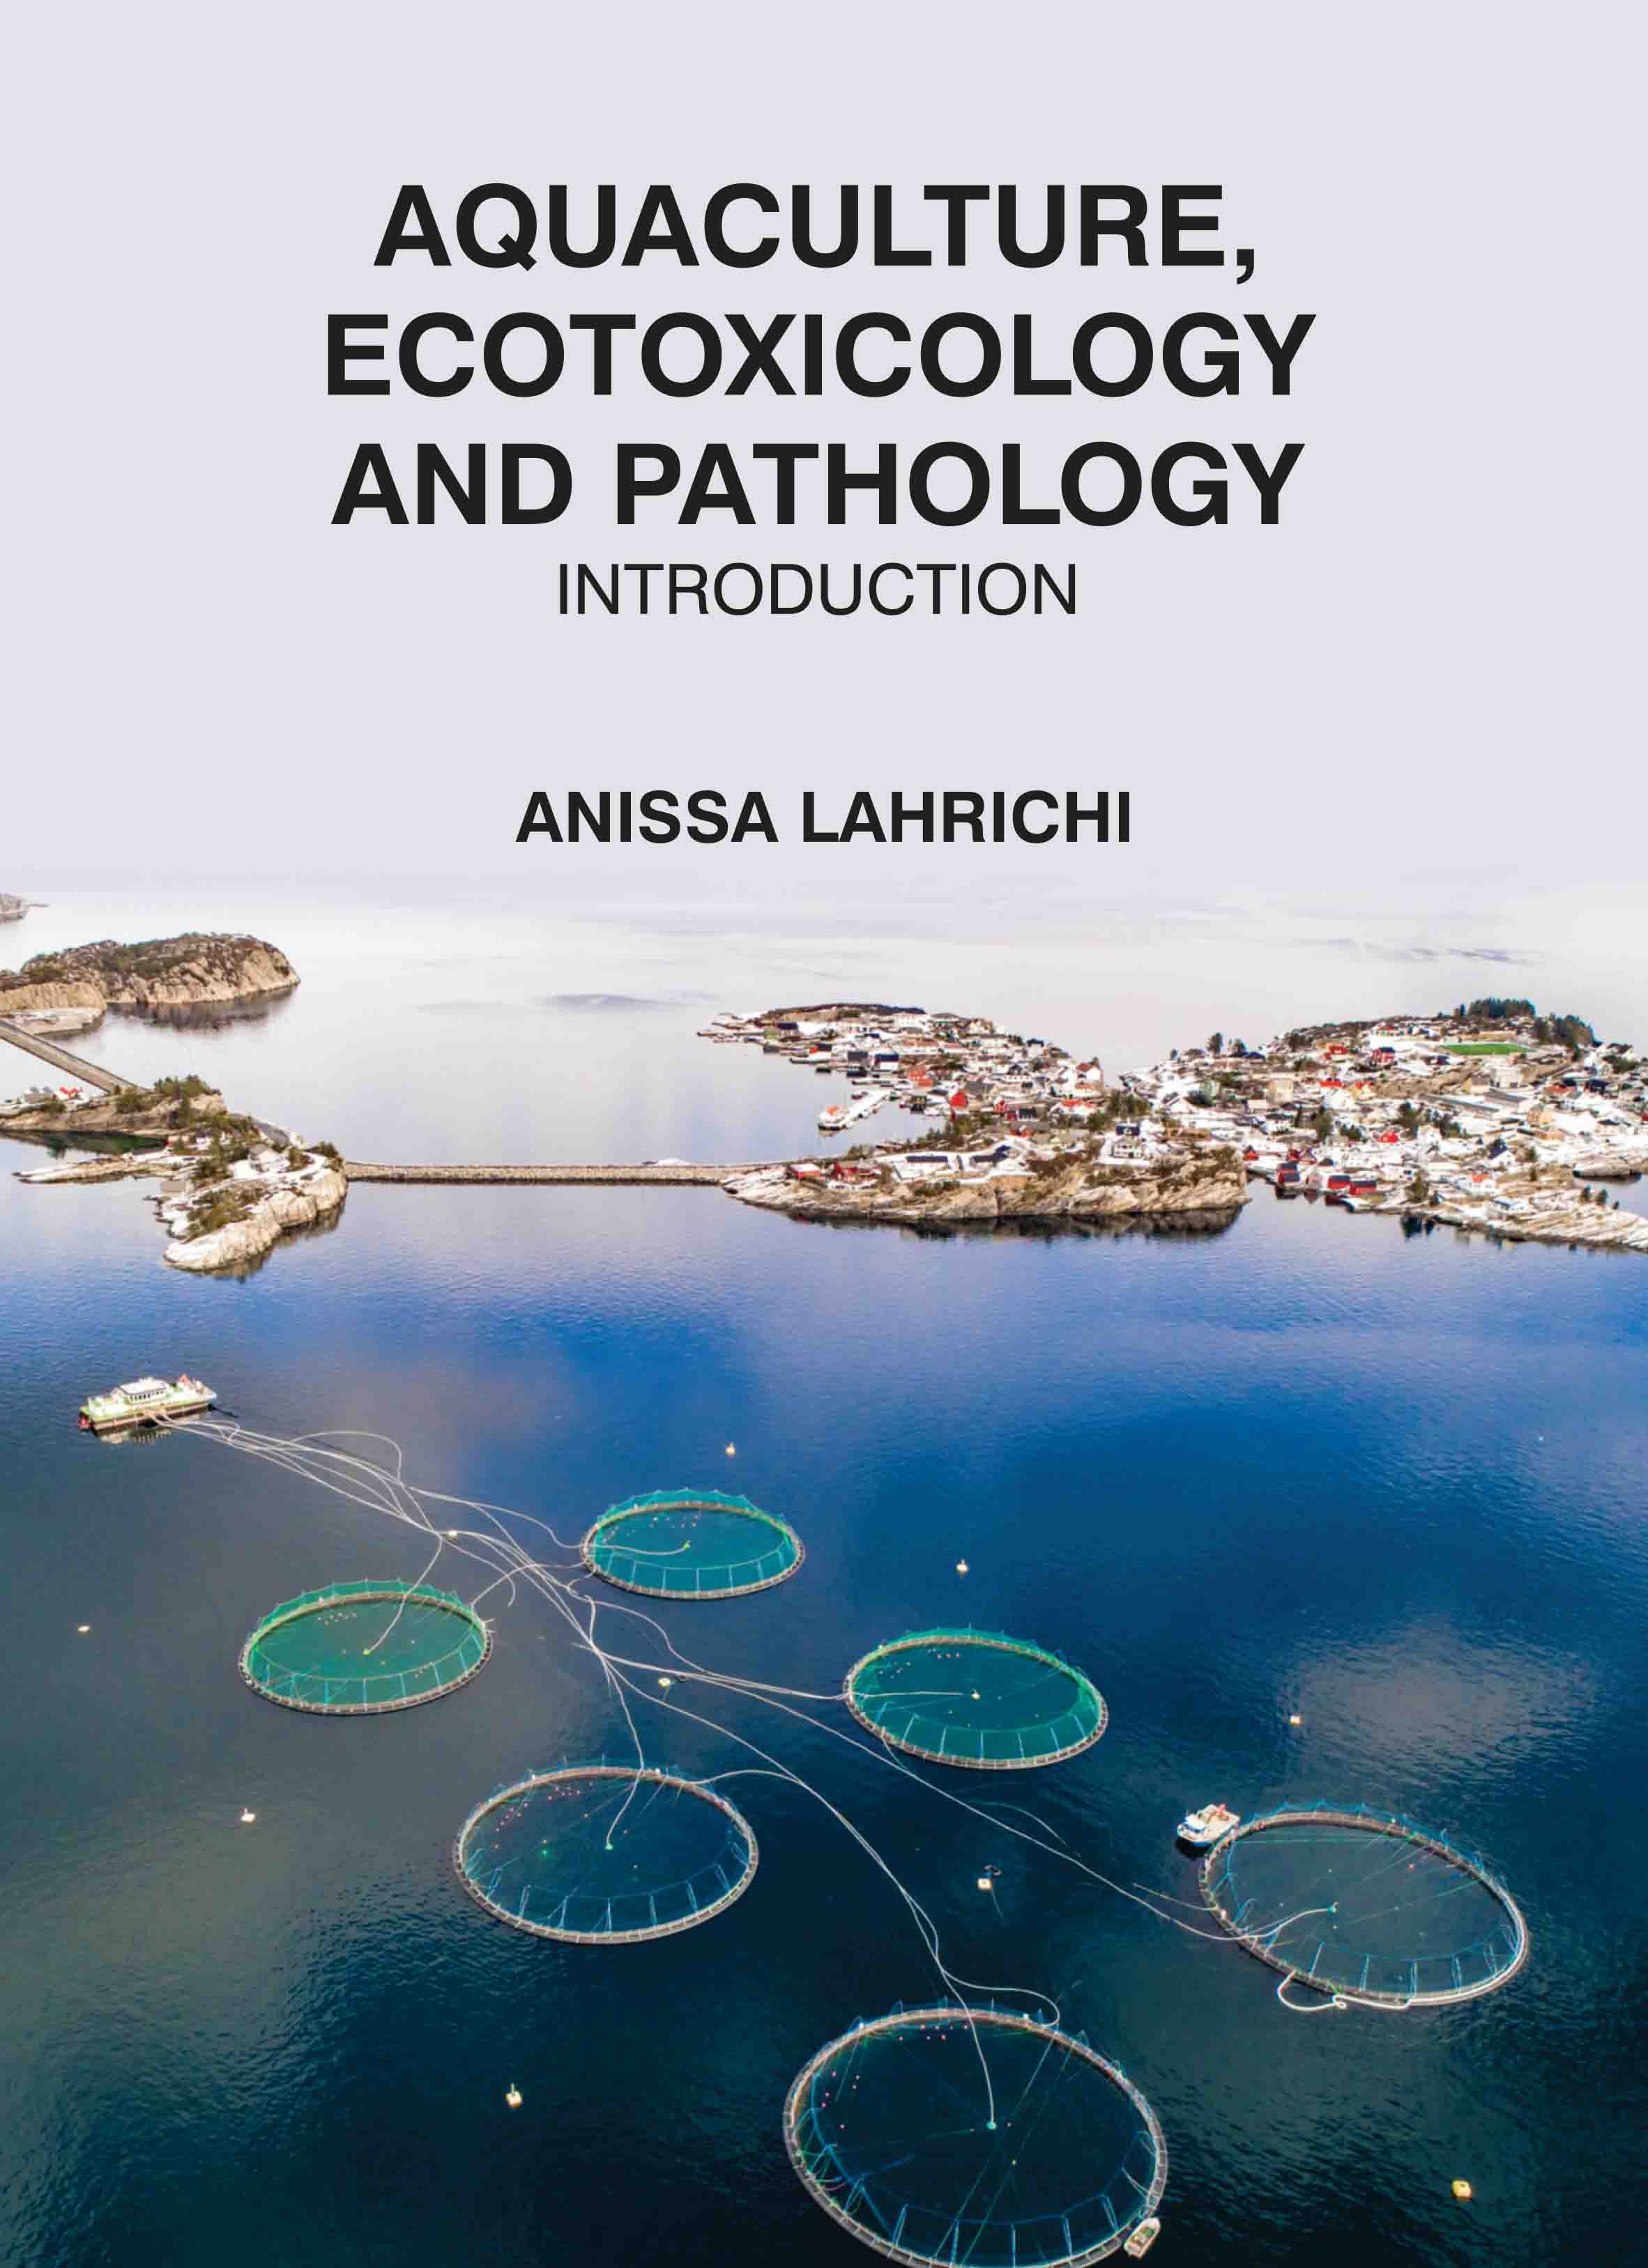 Aquaculture, Ecotoxicology and Pathology: Introduction